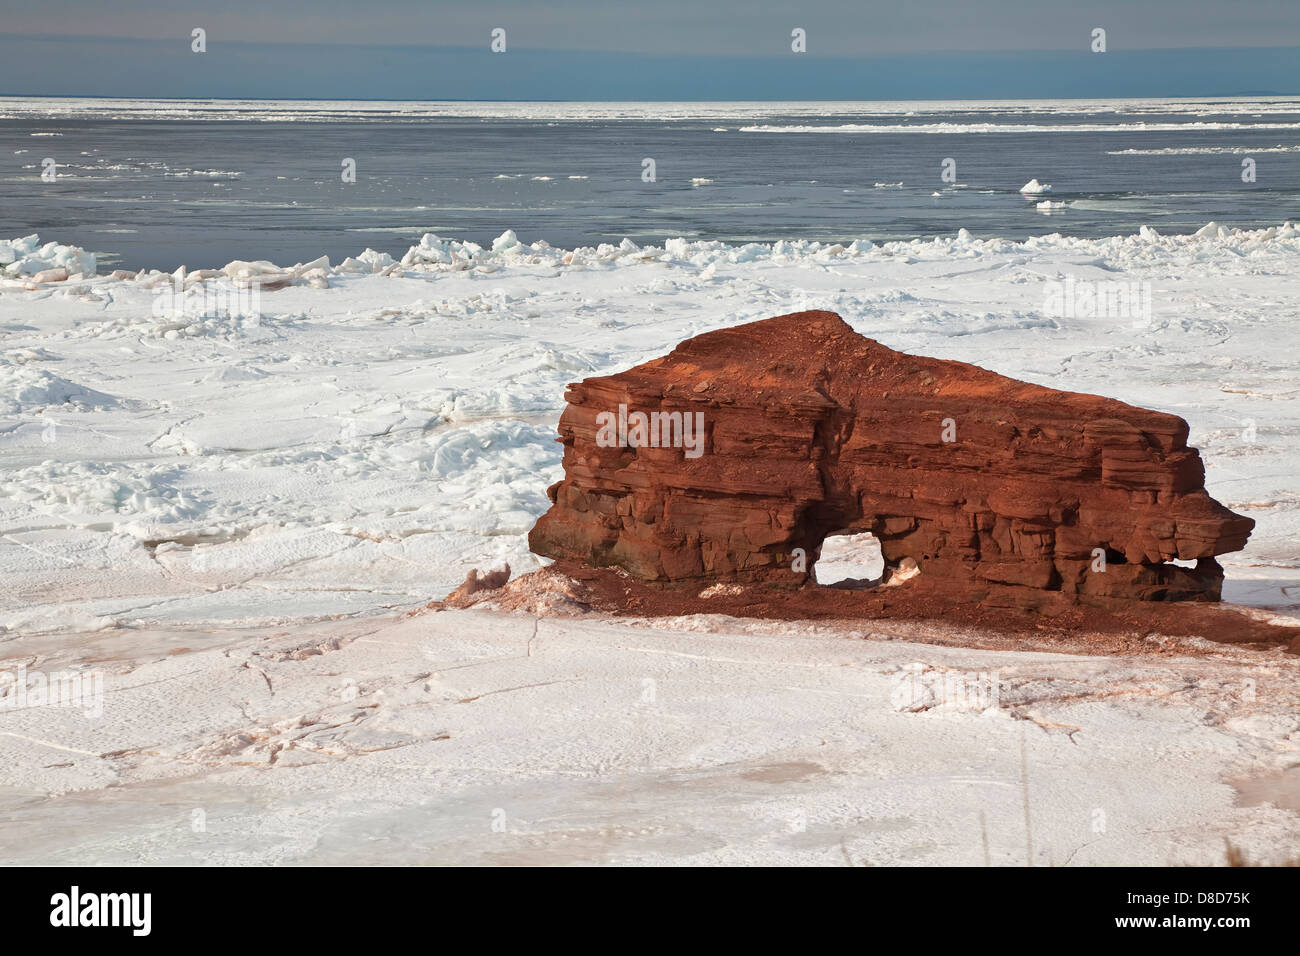 Briser la glace autour d'un produit intéressant d'érosion, une formation rocheuse de grès le long de la côte de l'Île du Prince Édouard, Canada Banque D'Images